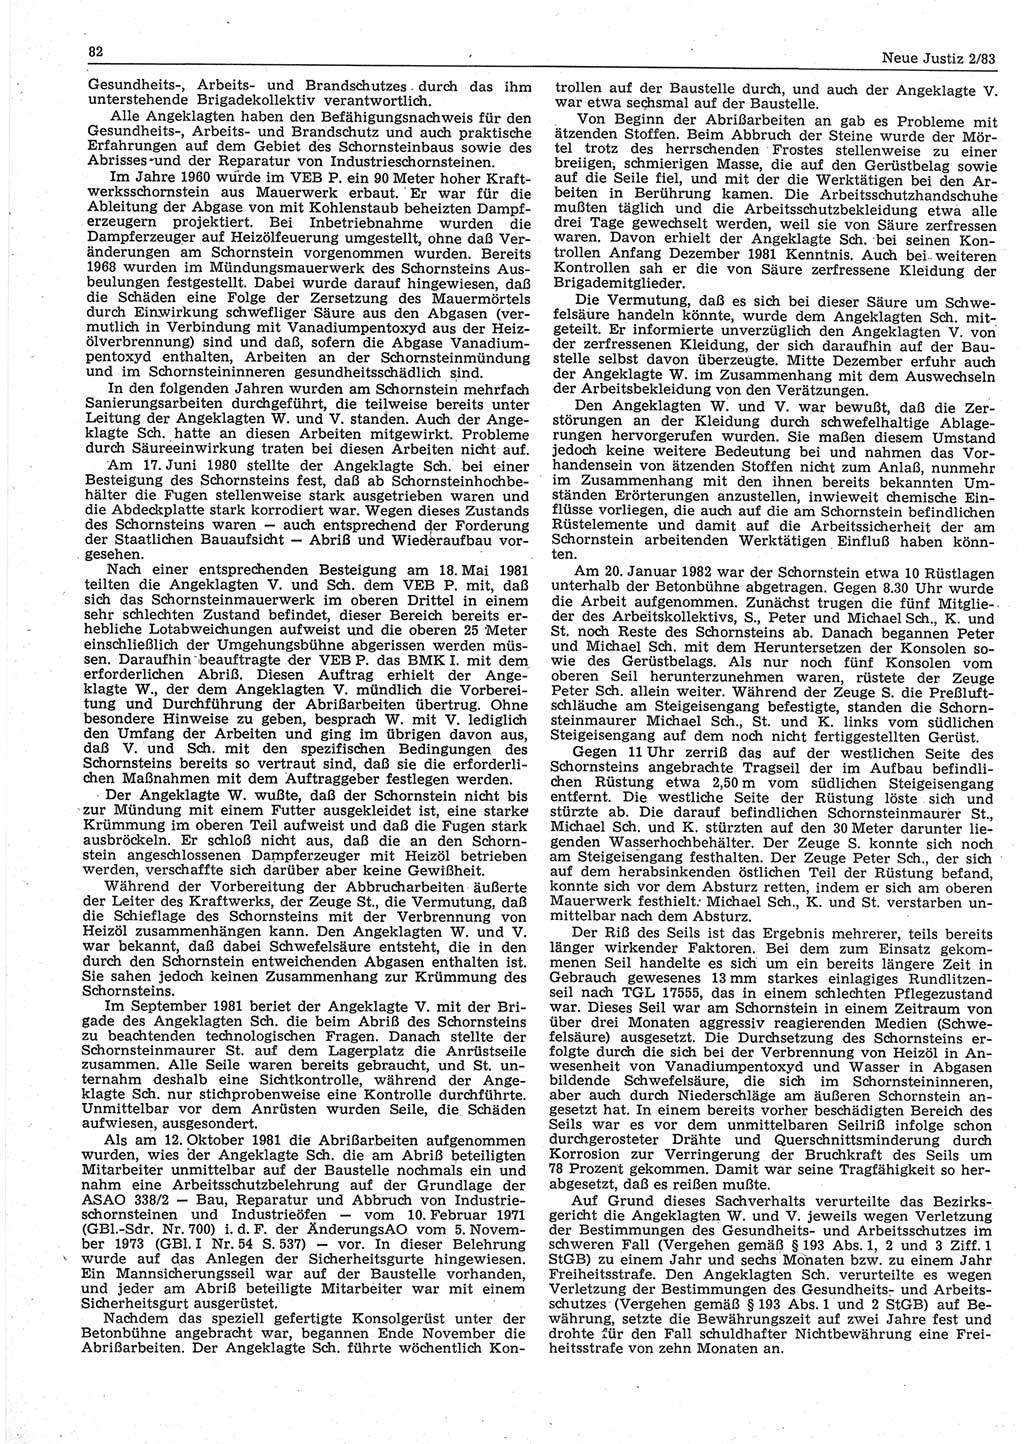 Neue Justiz (NJ), Zeitschrift für sozialistisches Recht und Gesetzlichkeit [Deutsche Demokratische Republik (DDR)], 37. Jahrgang 1983, Seite 82 (NJ DDR 1983, S. 82)